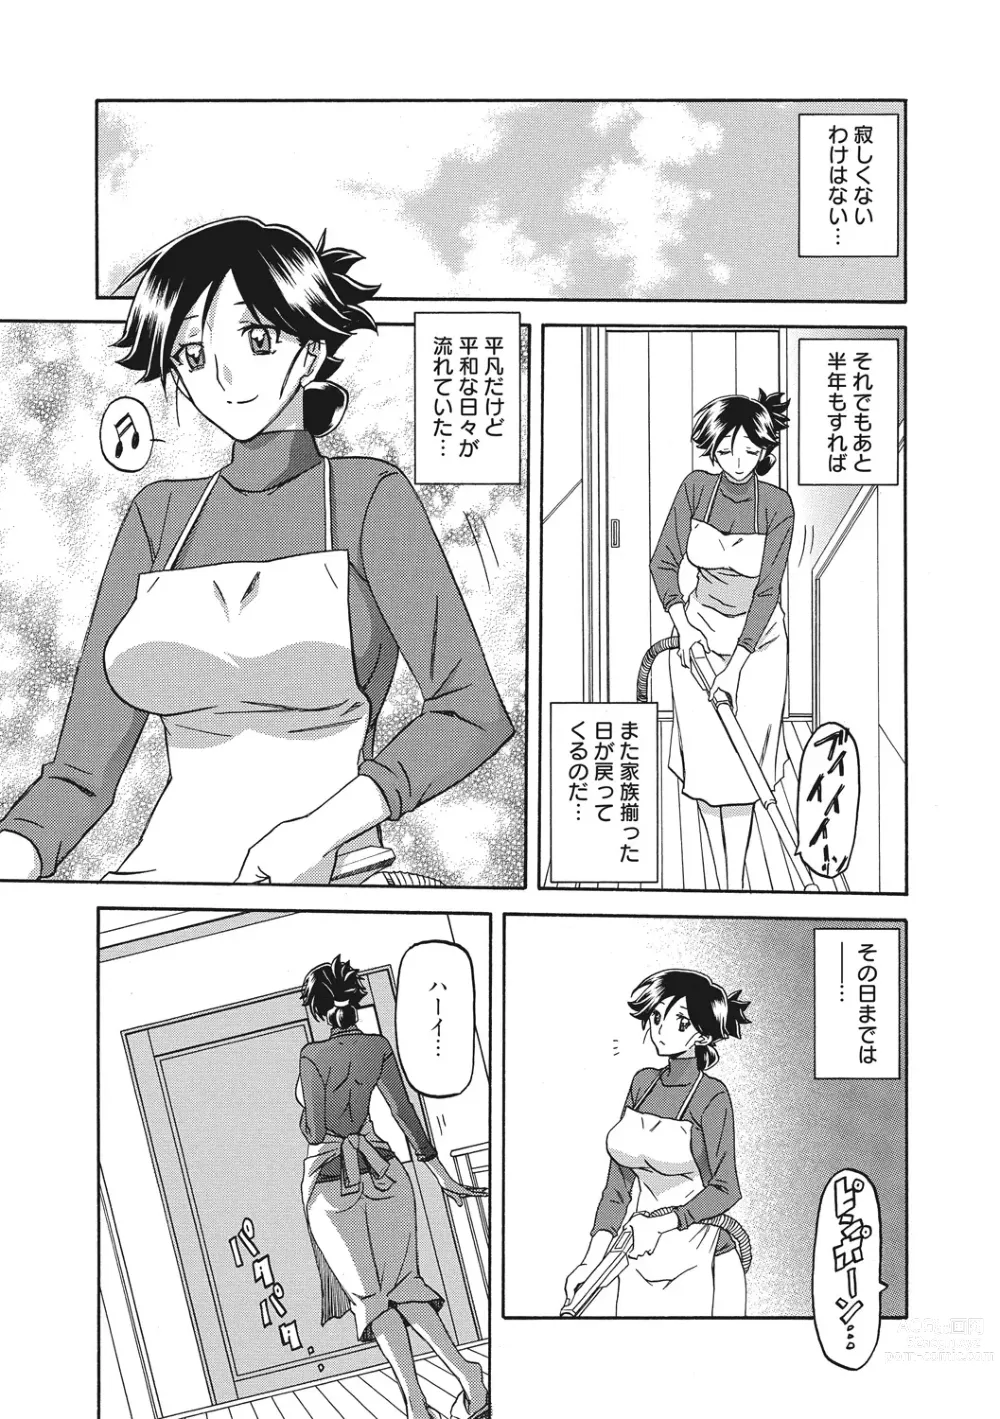 Page 9 of manga Gekkakou no Ori